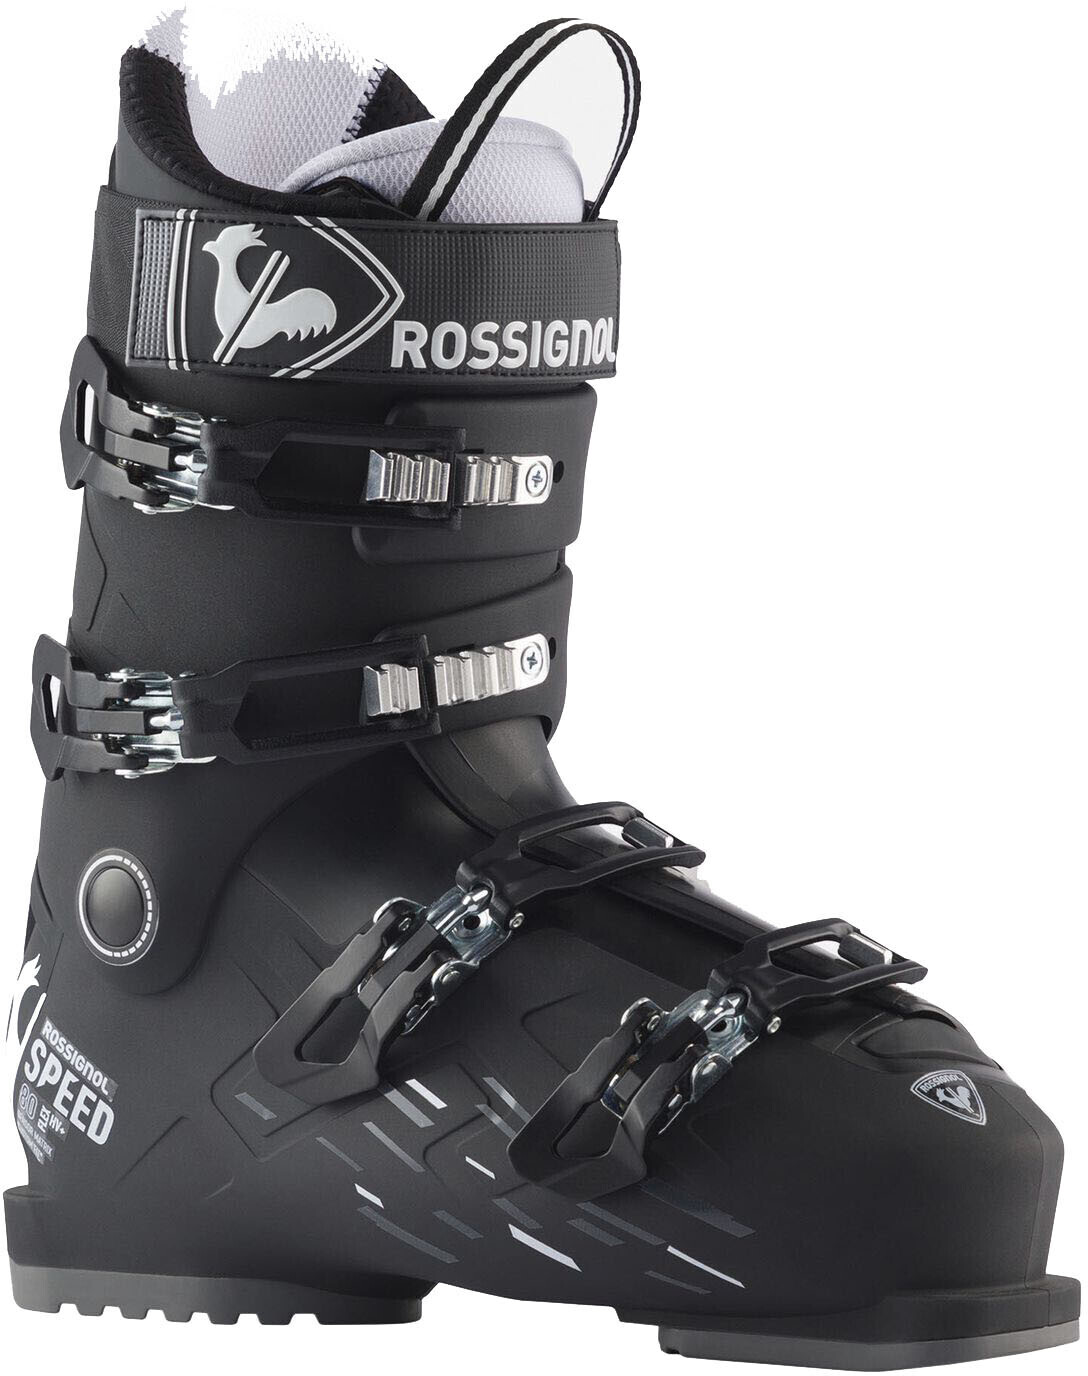 Rossignol Chaussure Ski Alpin Allspeed 70 Noir